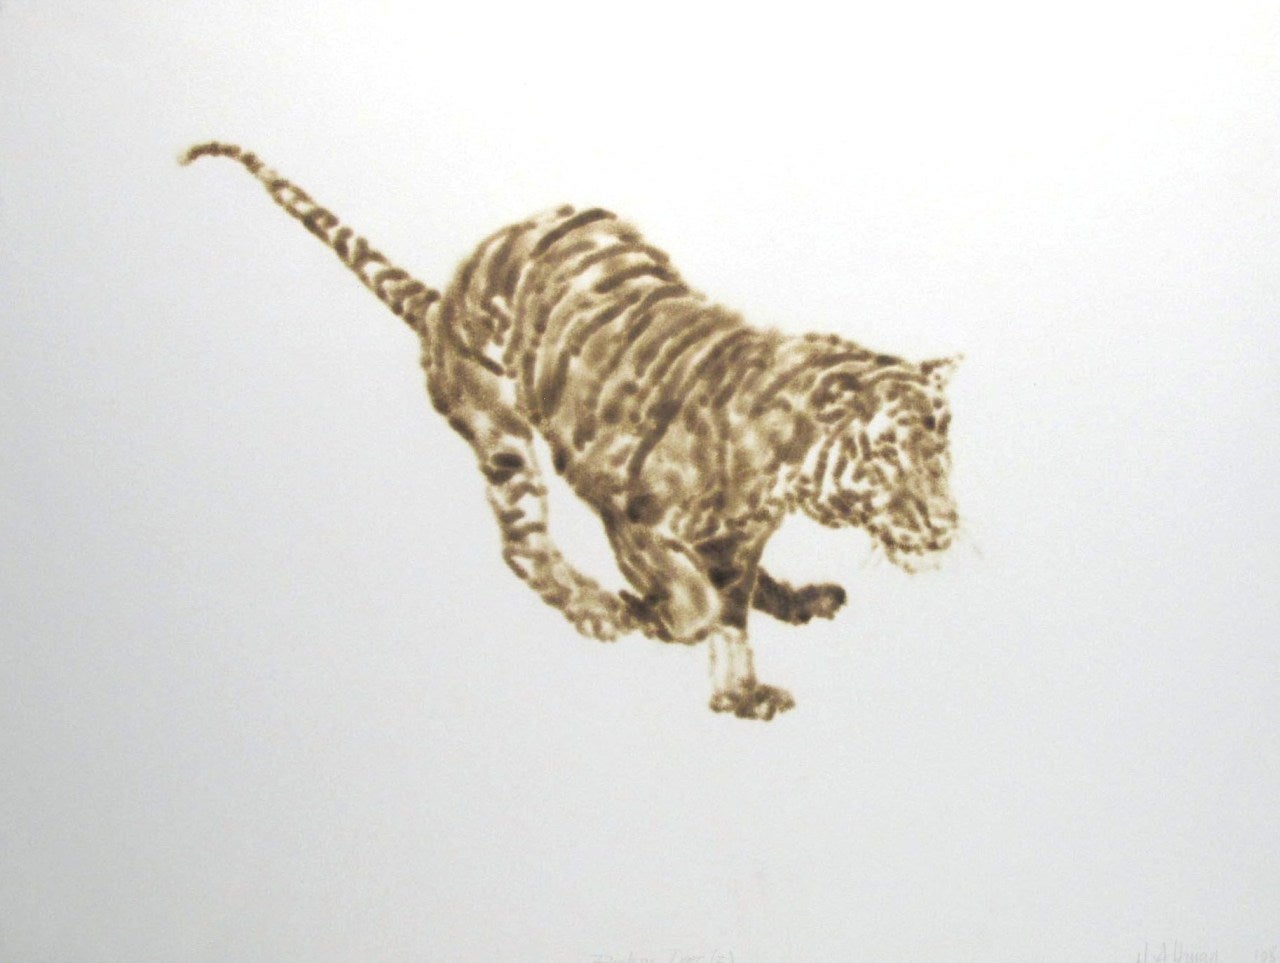 Helen Altman Animal Art - Rushing Tiger